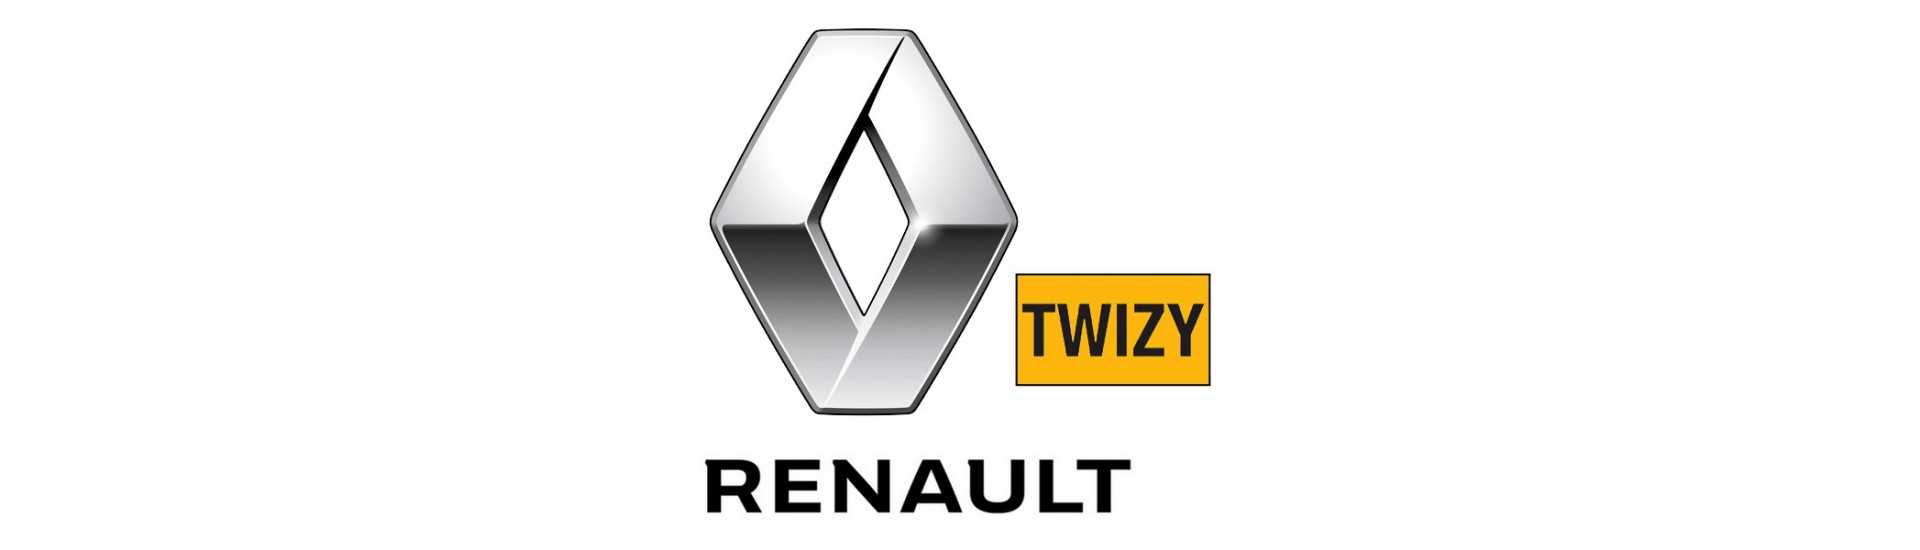 Crémaillère de direção pour car sans permis Renault Twizy